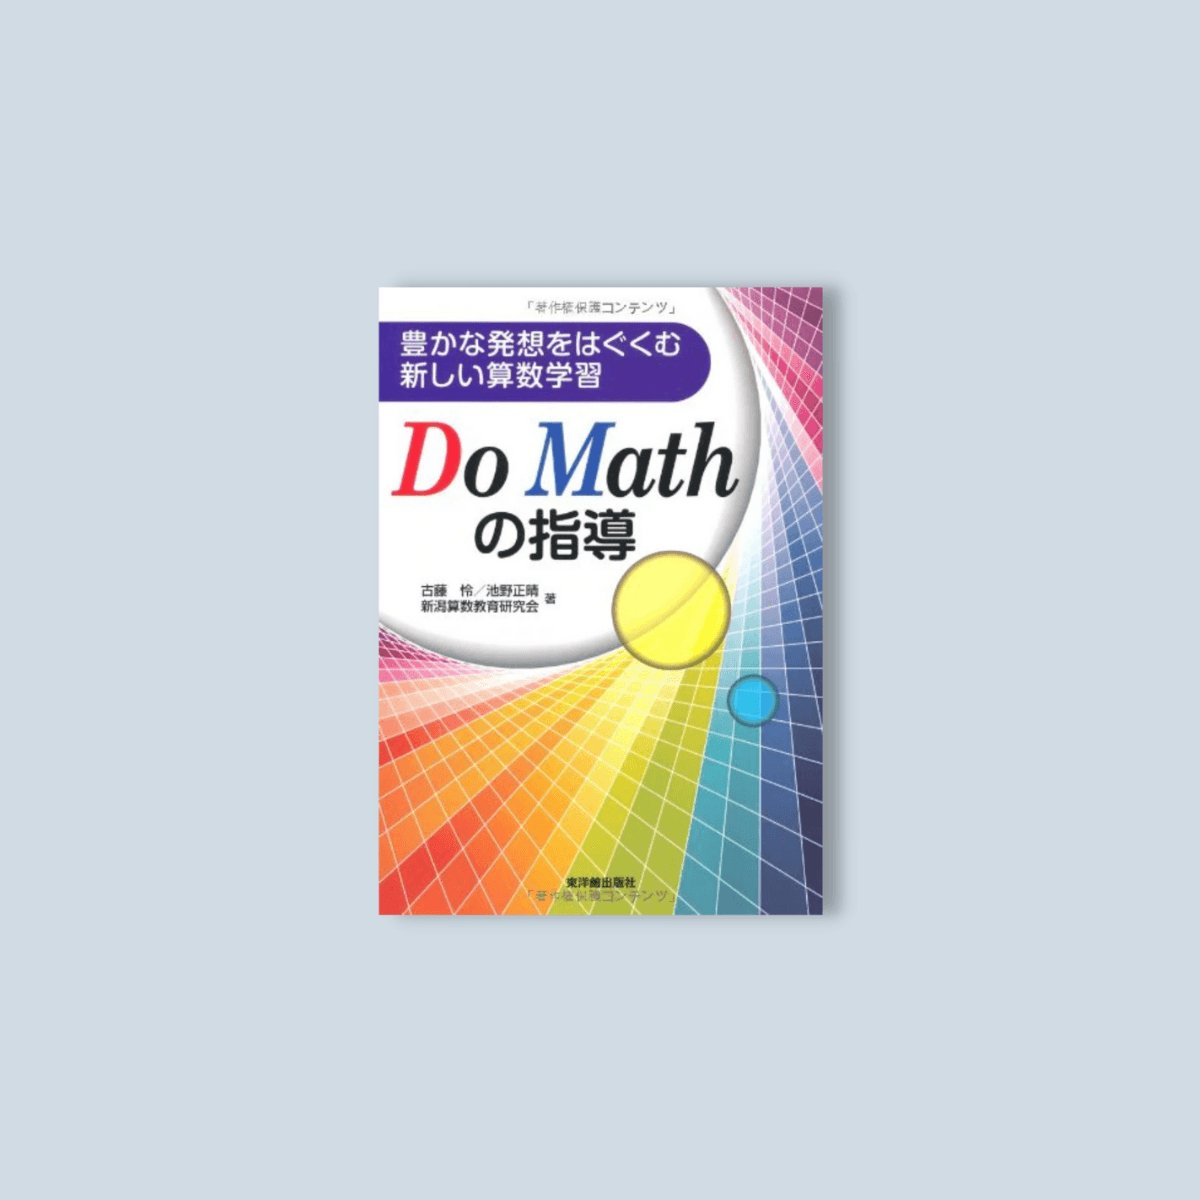 豊かな発想をはぐくむ新しい算数学習 - 東洋館出版社